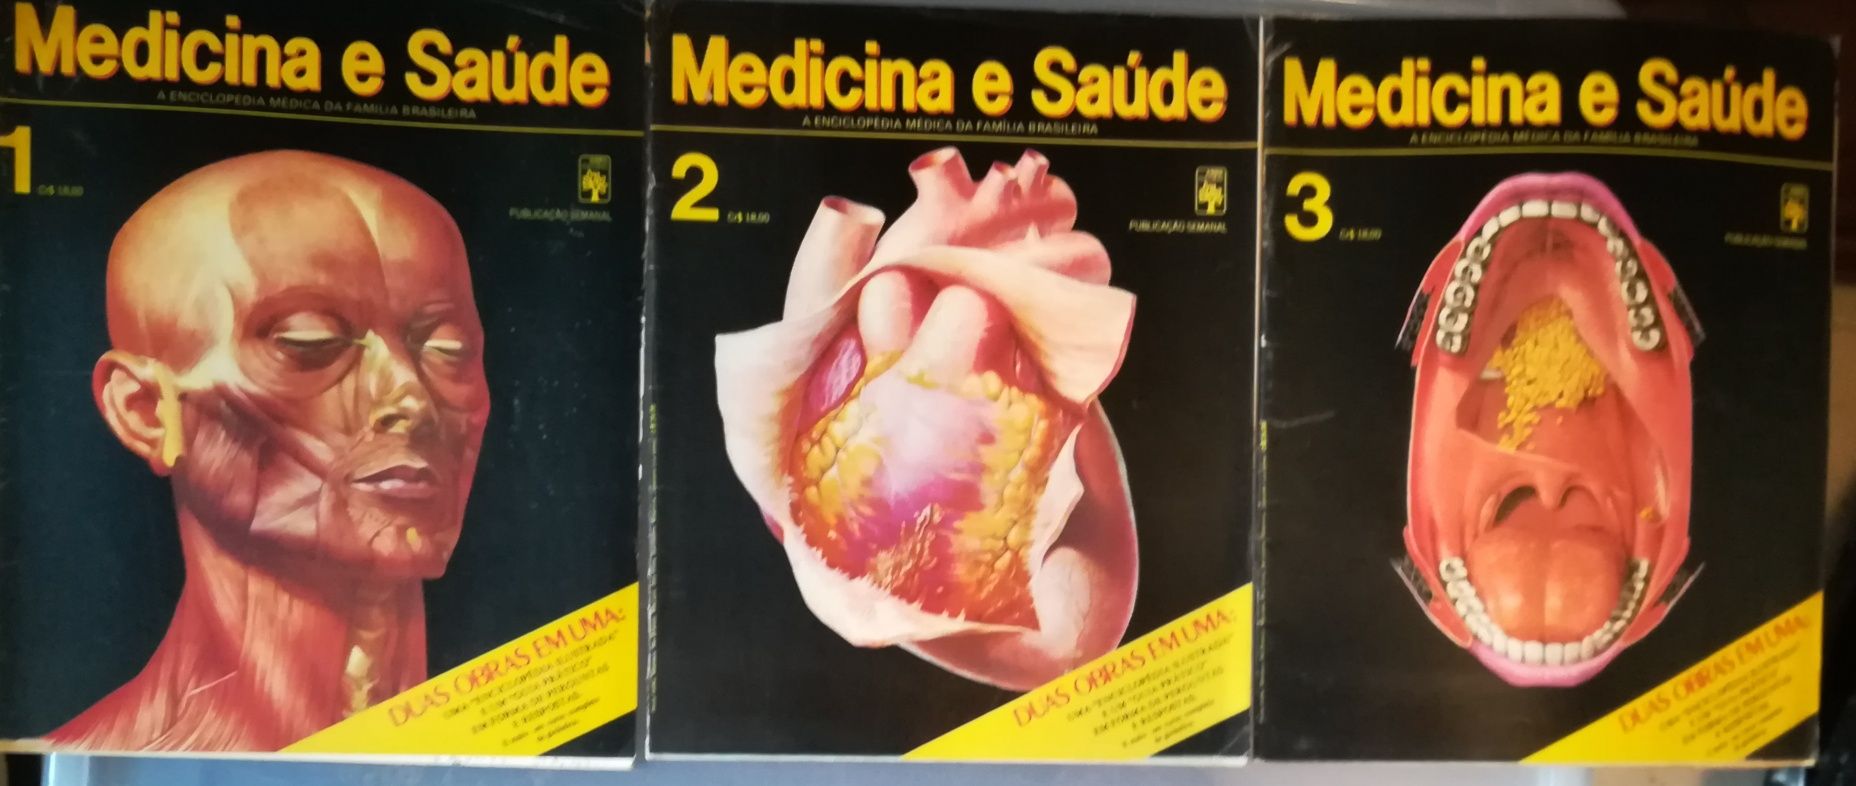 Medicina e Saúde 1, 2 e 3